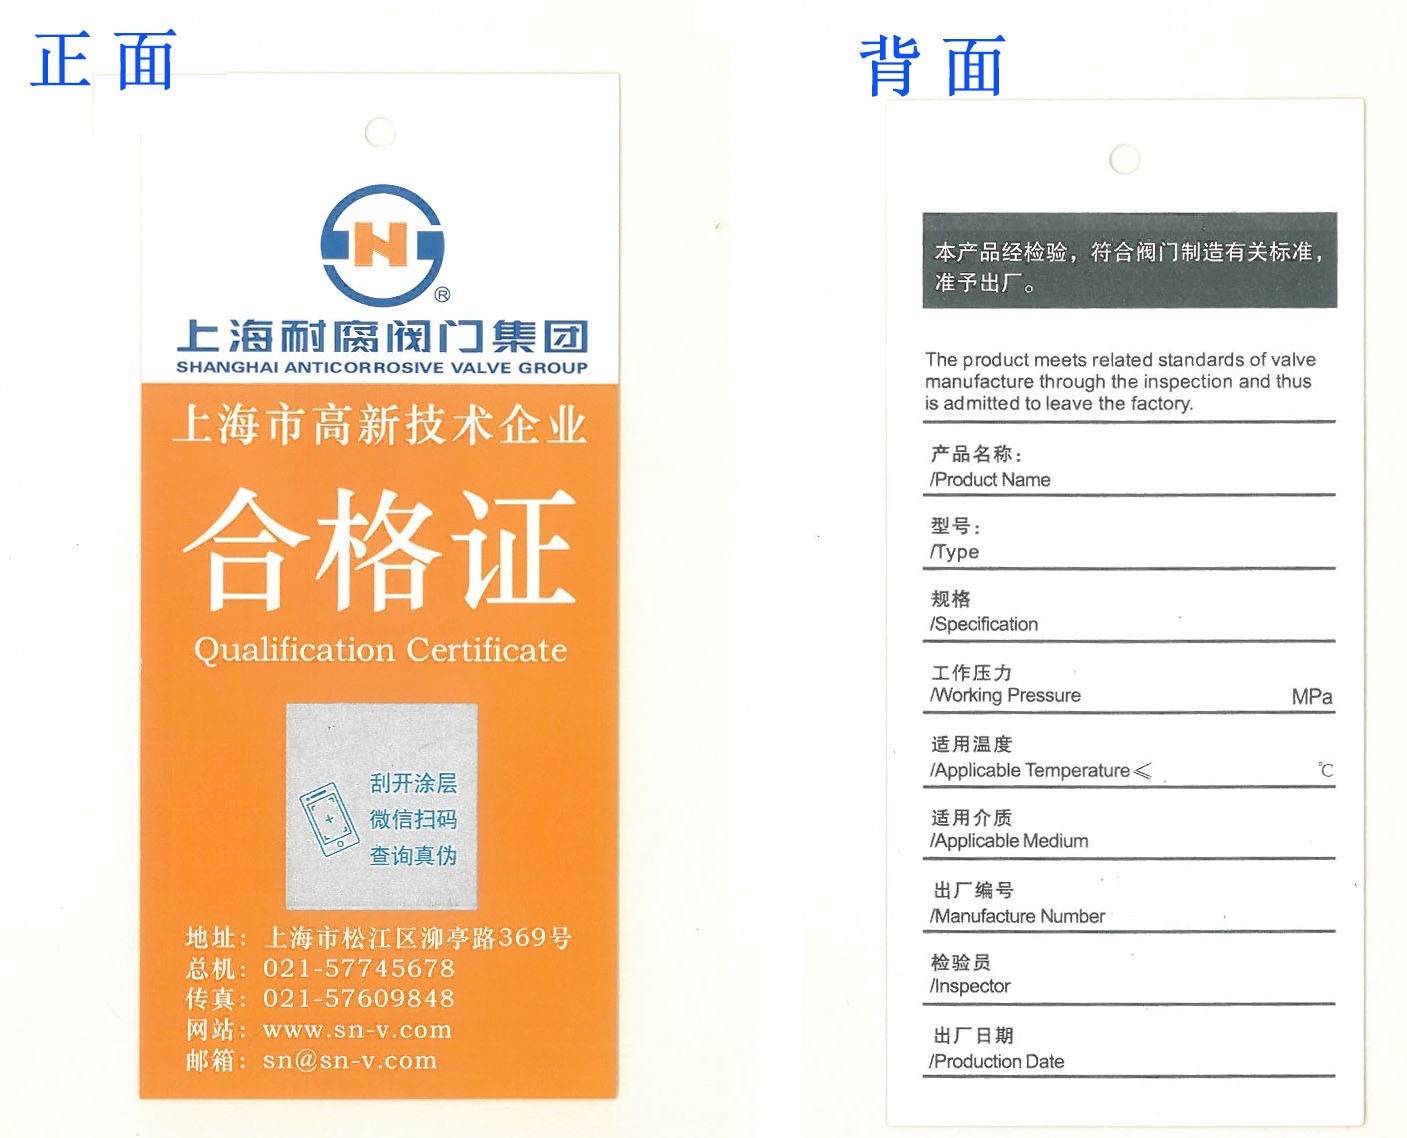 上海耐腐阀门集团启用全新扫码合格证